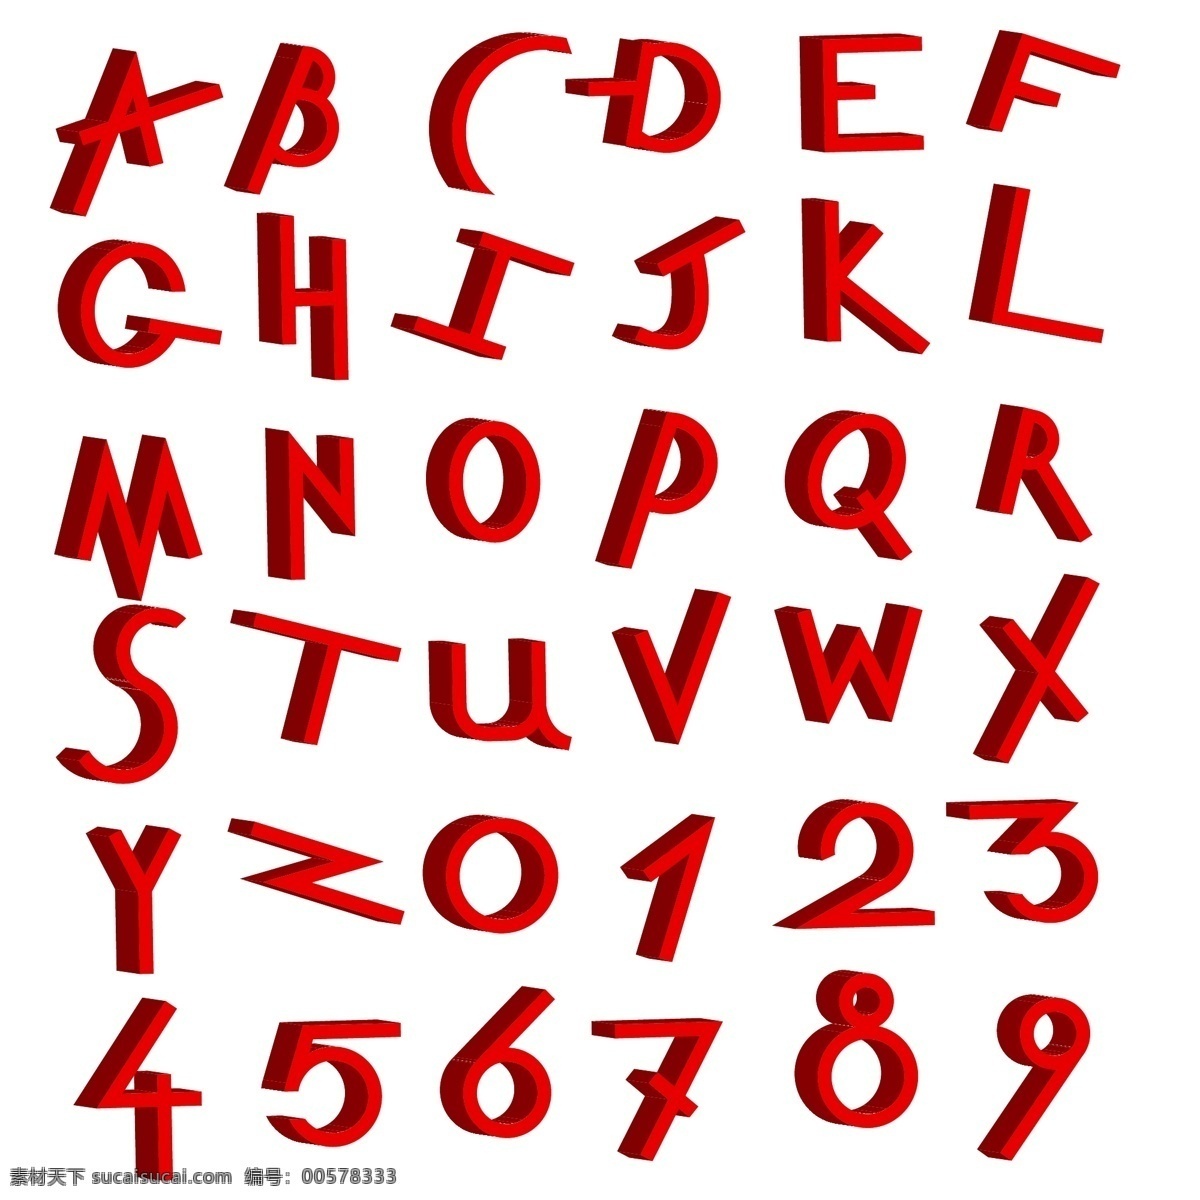 数字 字母 立体 字 数字设计 立体字 创意字体设计 英文艺术字 字母艺术字 书画文字 文化艺术 矢量素材 白色